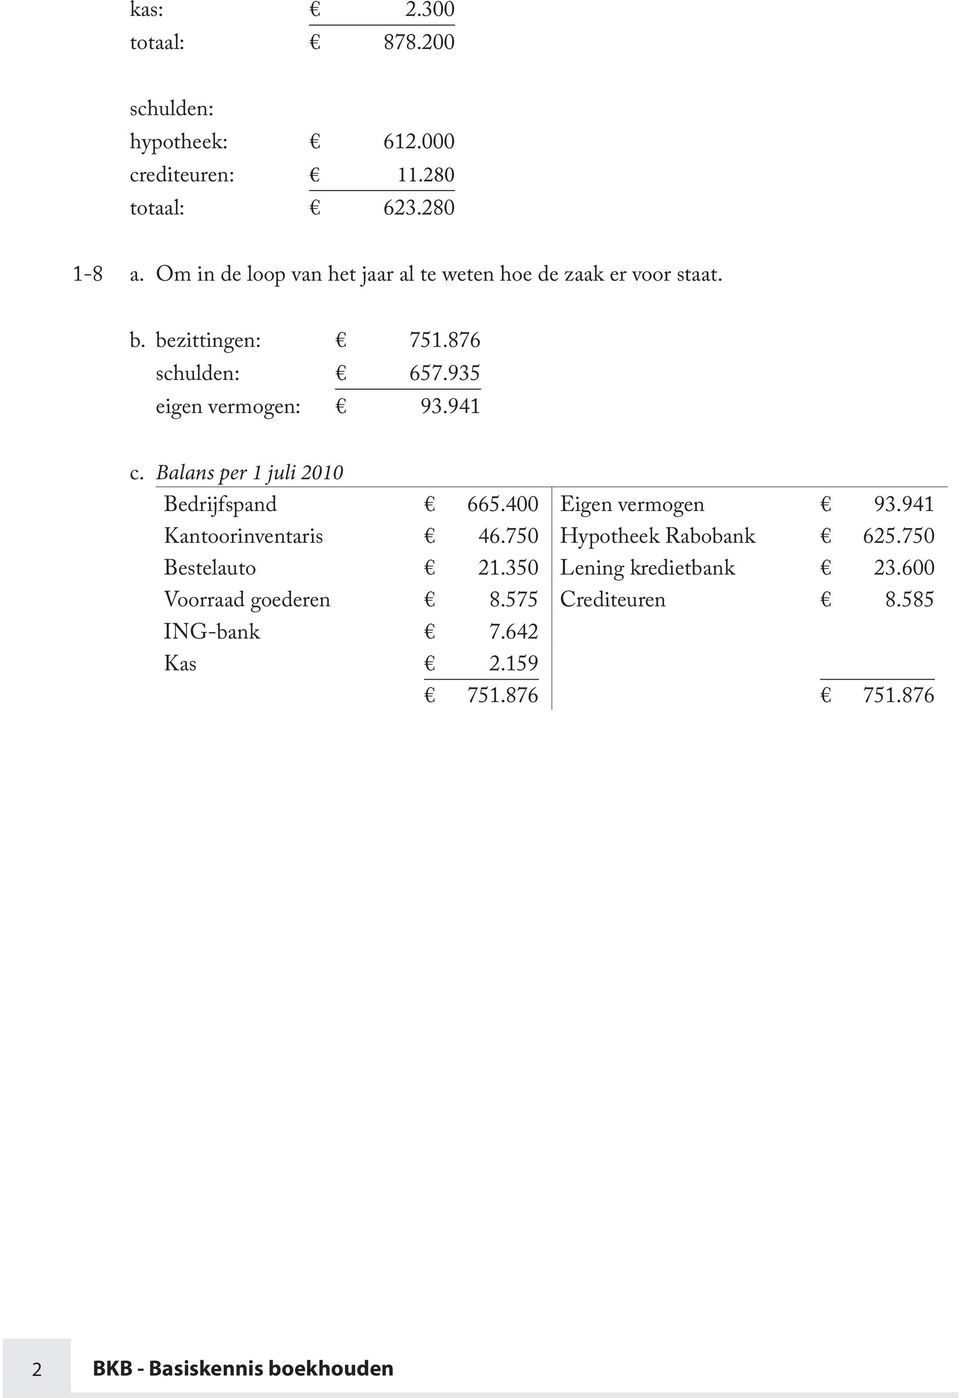 941 c. Balans per 1 juli 2010 Bedrijfspand 665.400 Eigen vermogen 93.941 Kantoorinventaris 46.750 Hypotheek Rabobank 625.